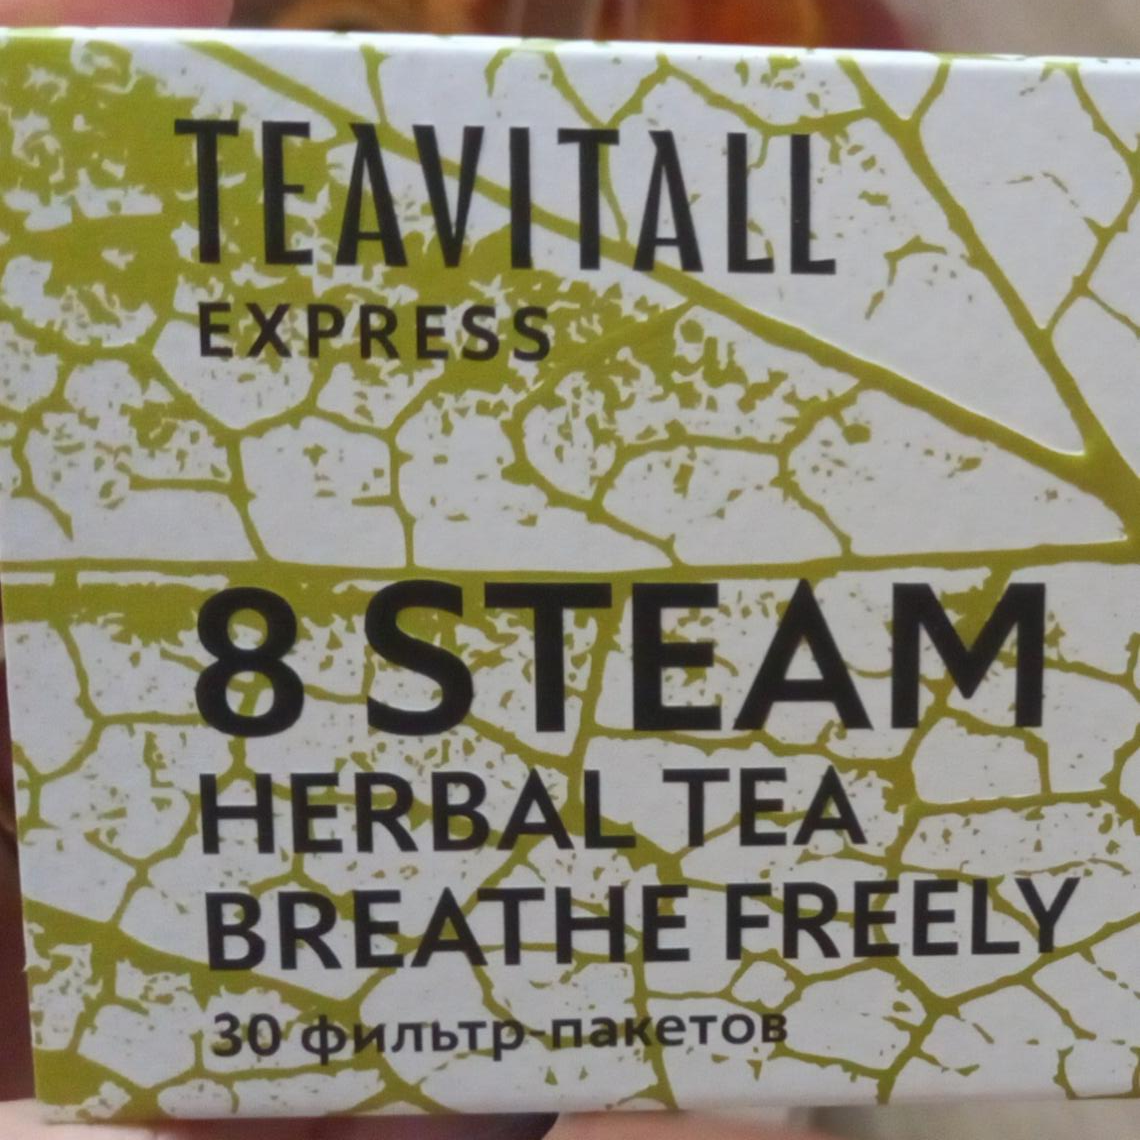 Фото - Полнота дыхания травяной чай EXPRESS STEAM TEAVITALL